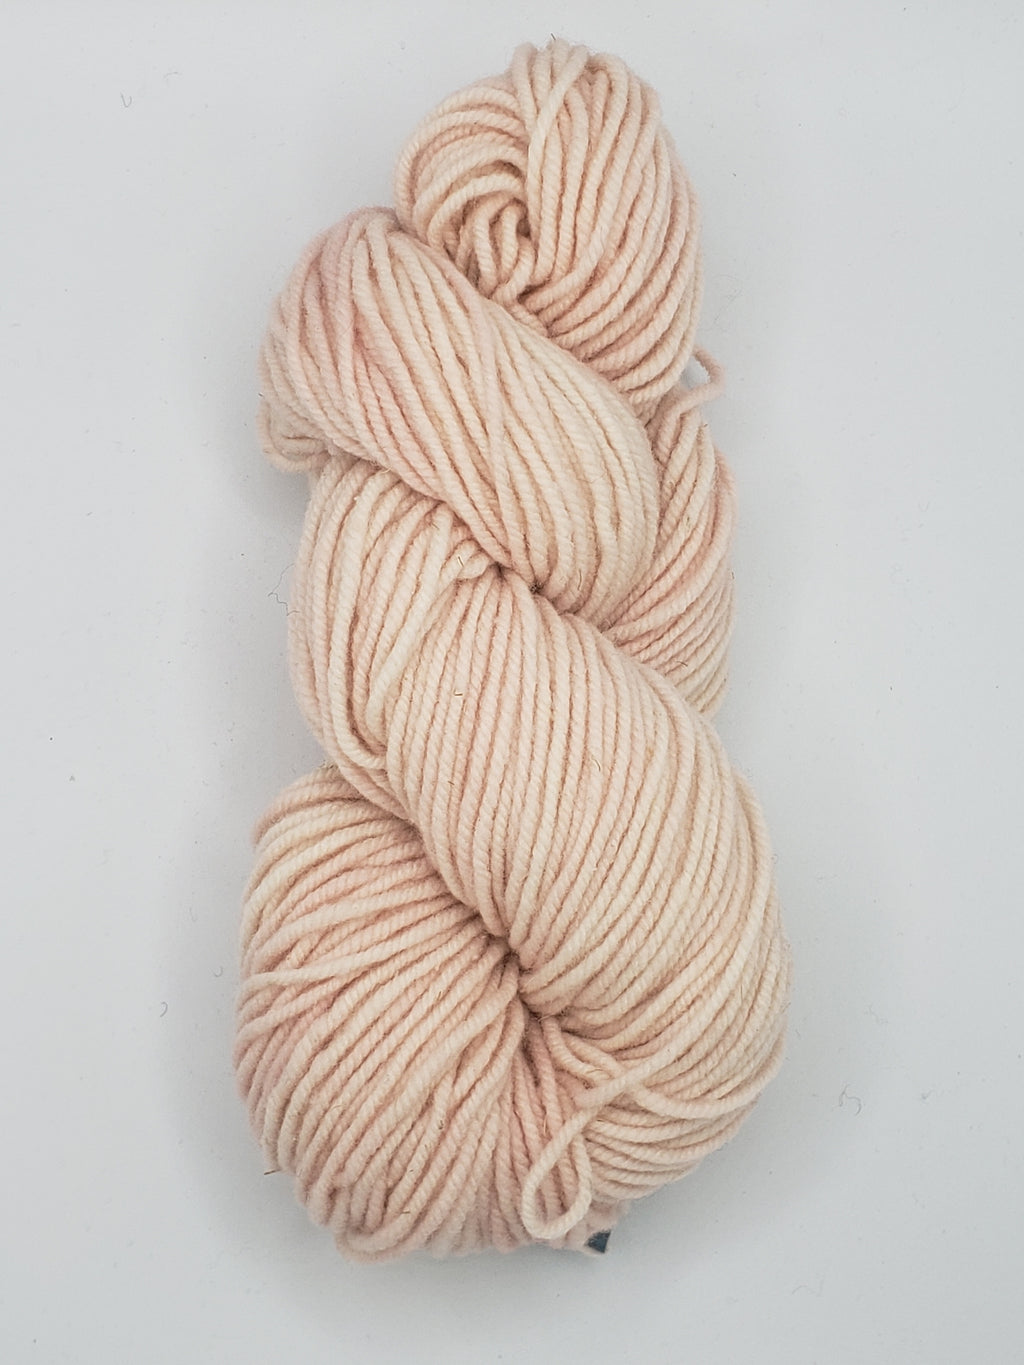 Wonder Woolen - SHELL PINK - Fleece Artist Hand Dyed Yarn 4 ounces/115g